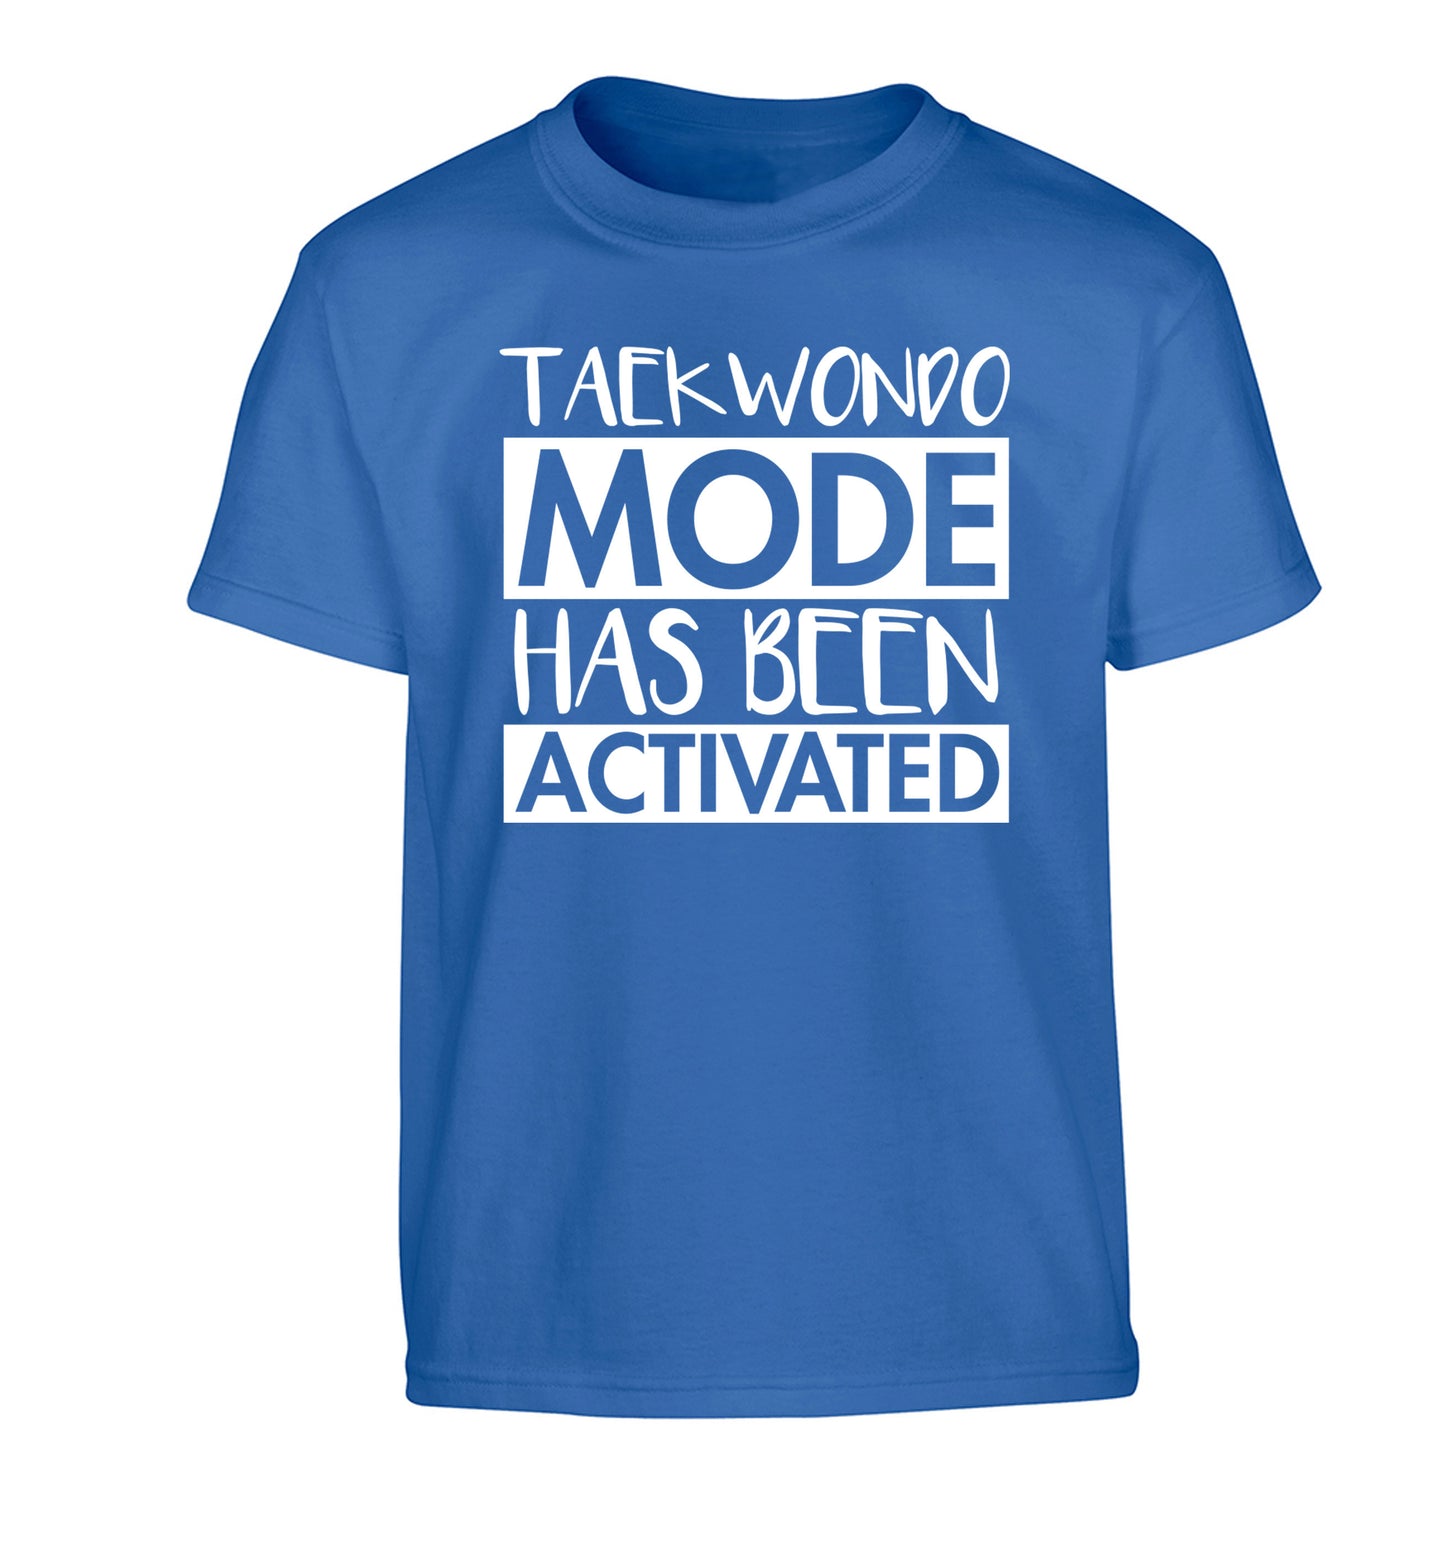 Taekwondo mode activated Children's blue Tshirt 12-14 Years